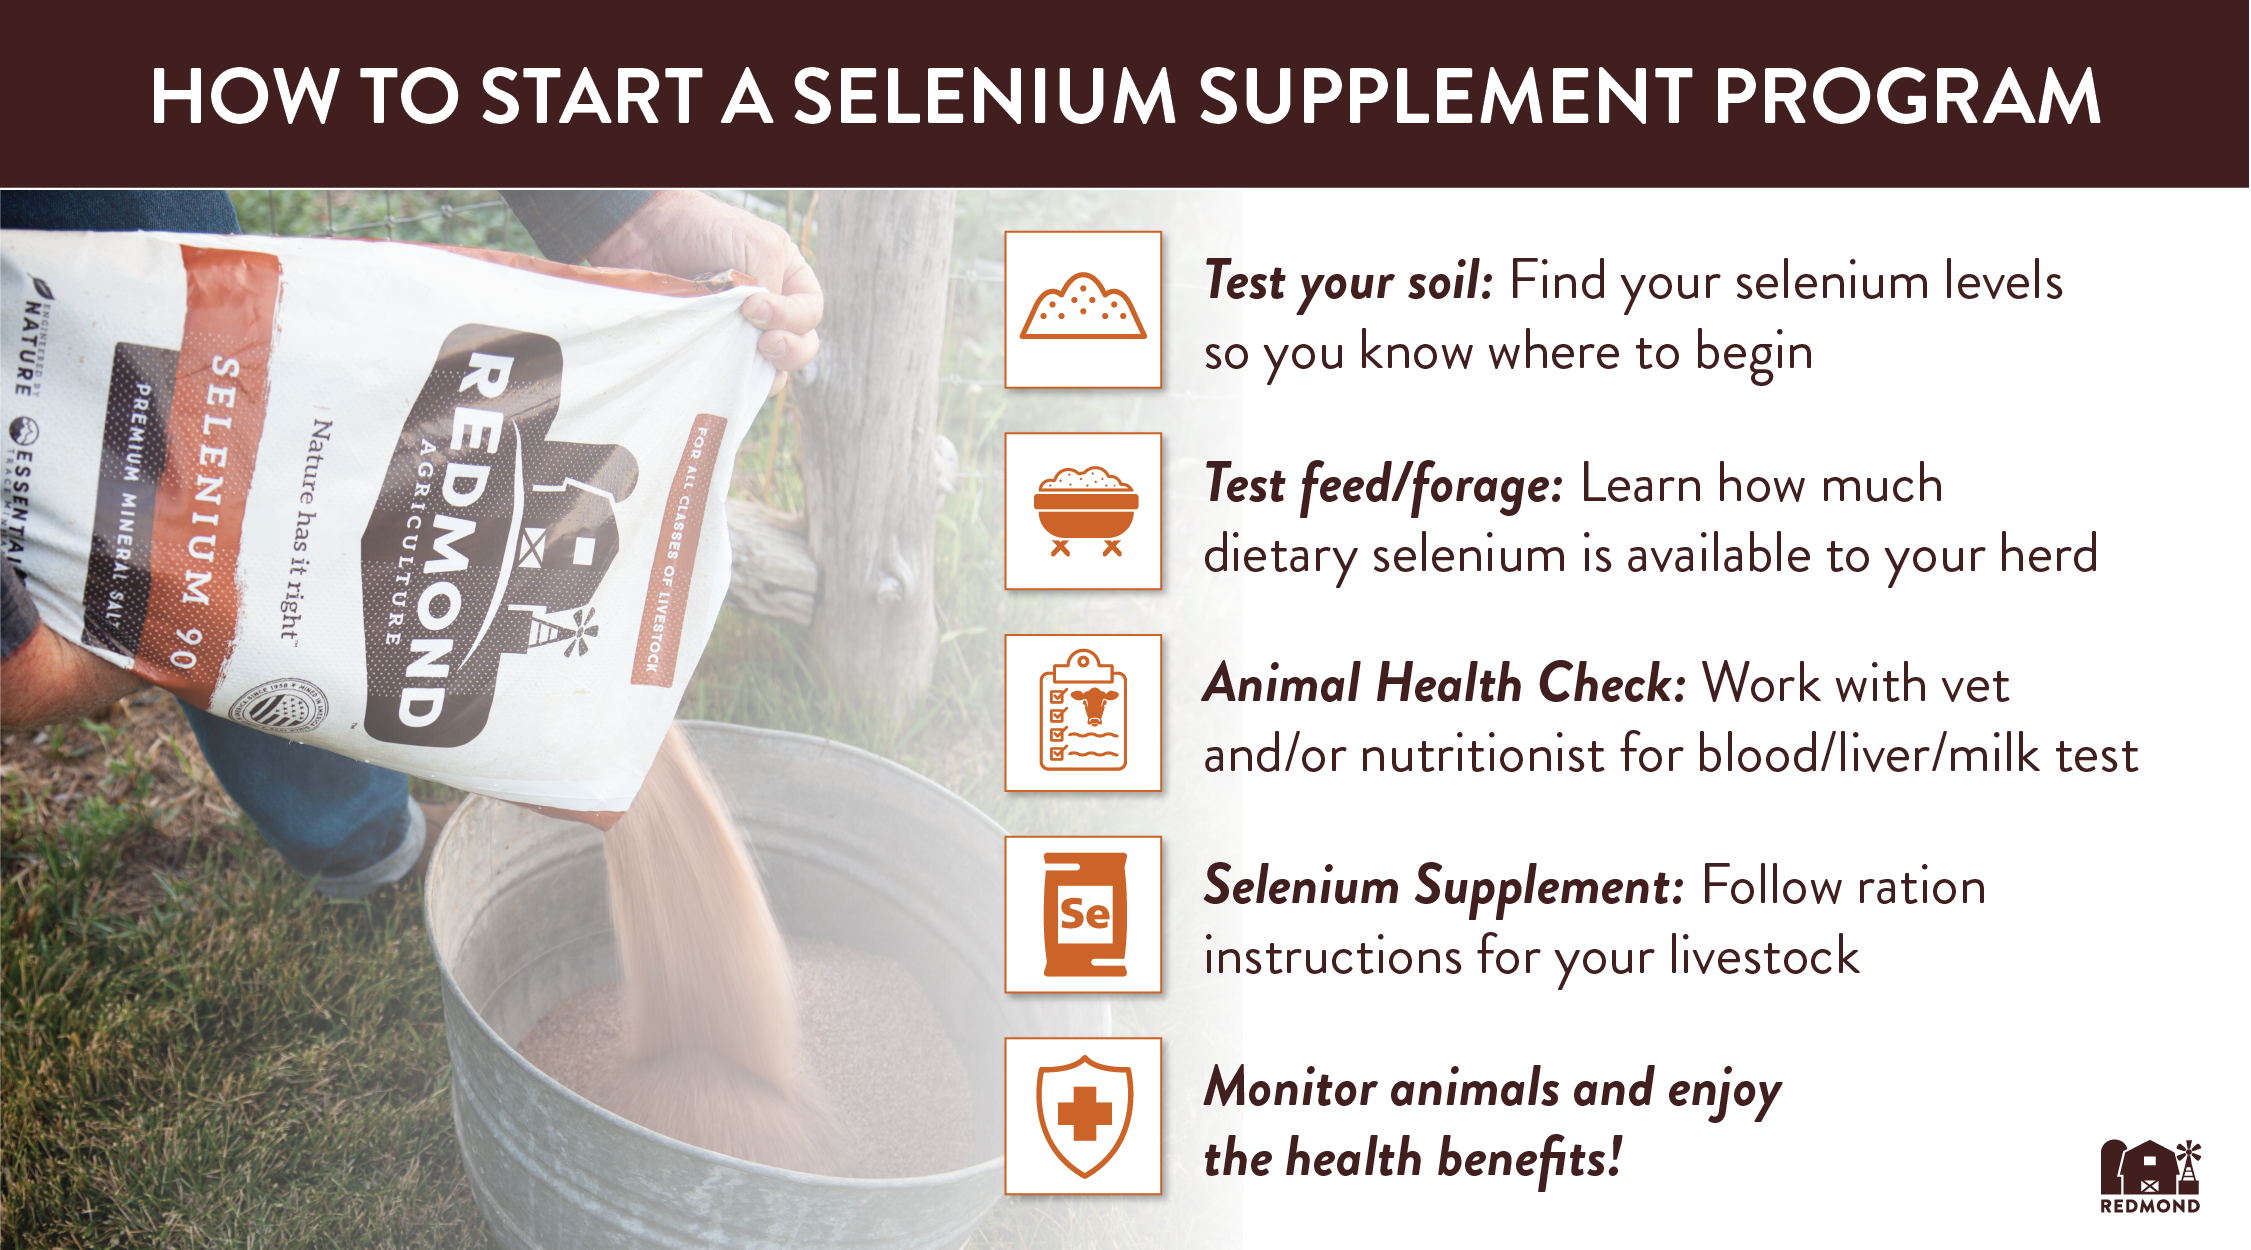 Selenium supplements for Livestock